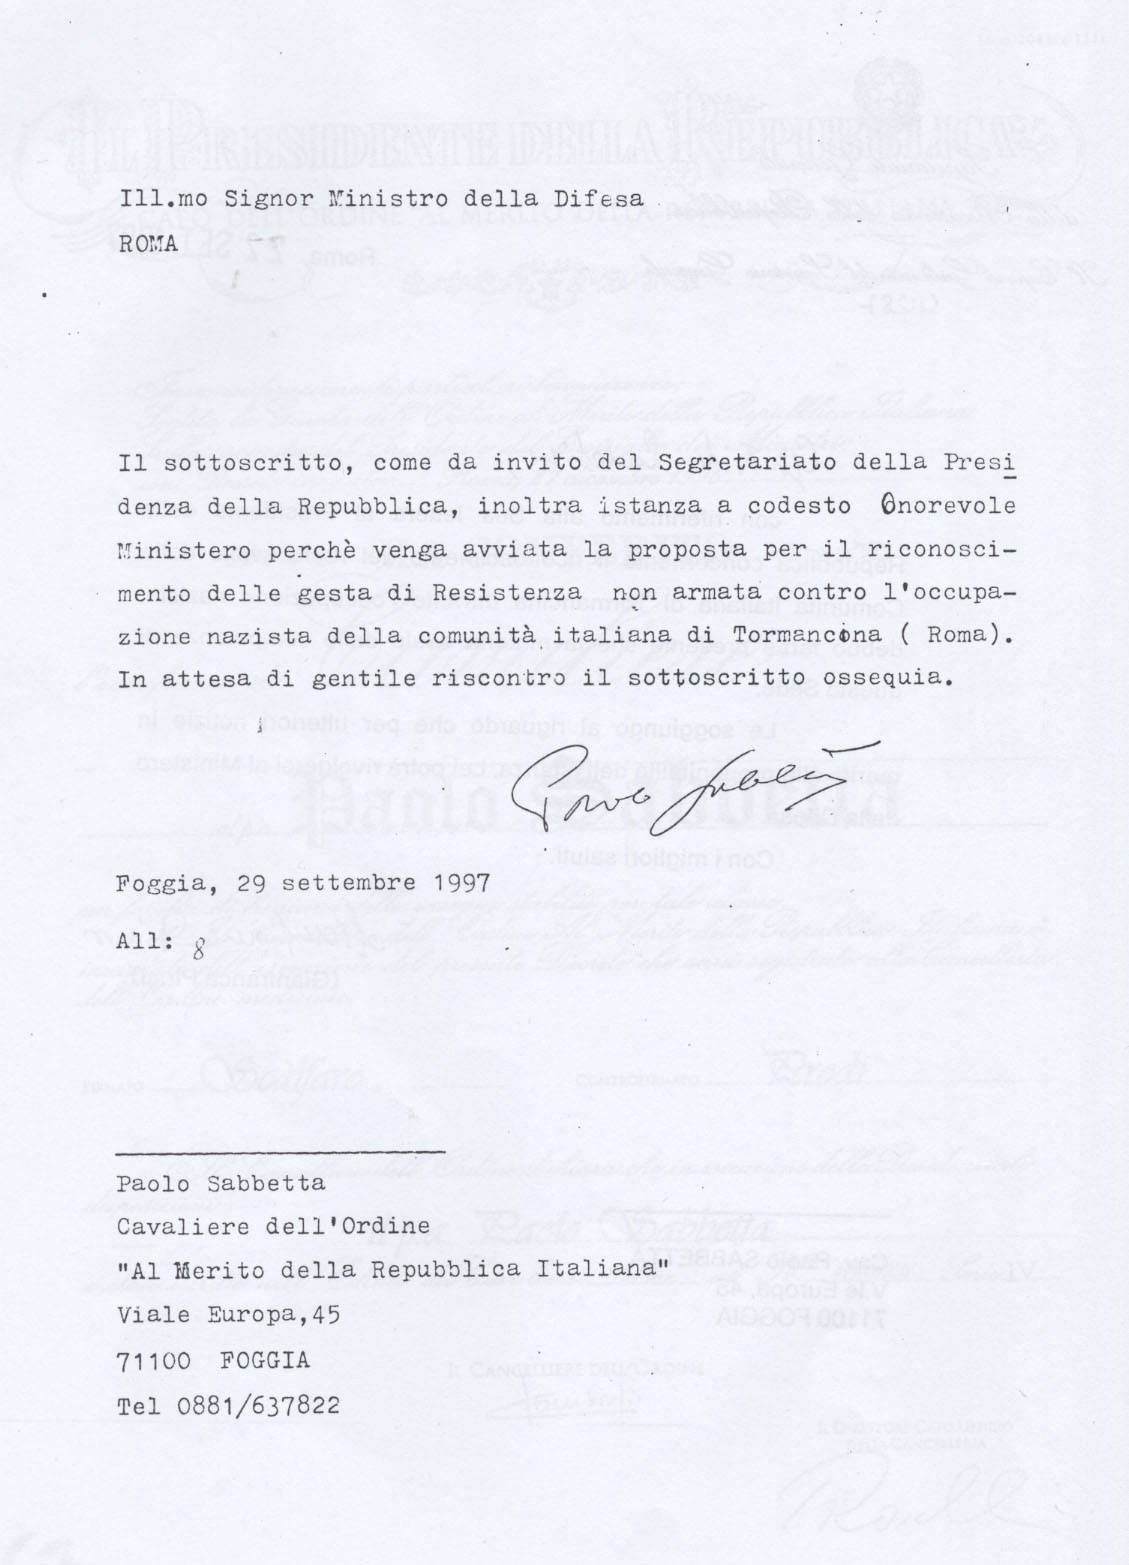 Lettera di Sabbetta al Ministero della Difesa  per l'ottenimento di un riconoscimento relativo alle gesta della Comunità di Tormancina (Obiettivi da raggiungere)